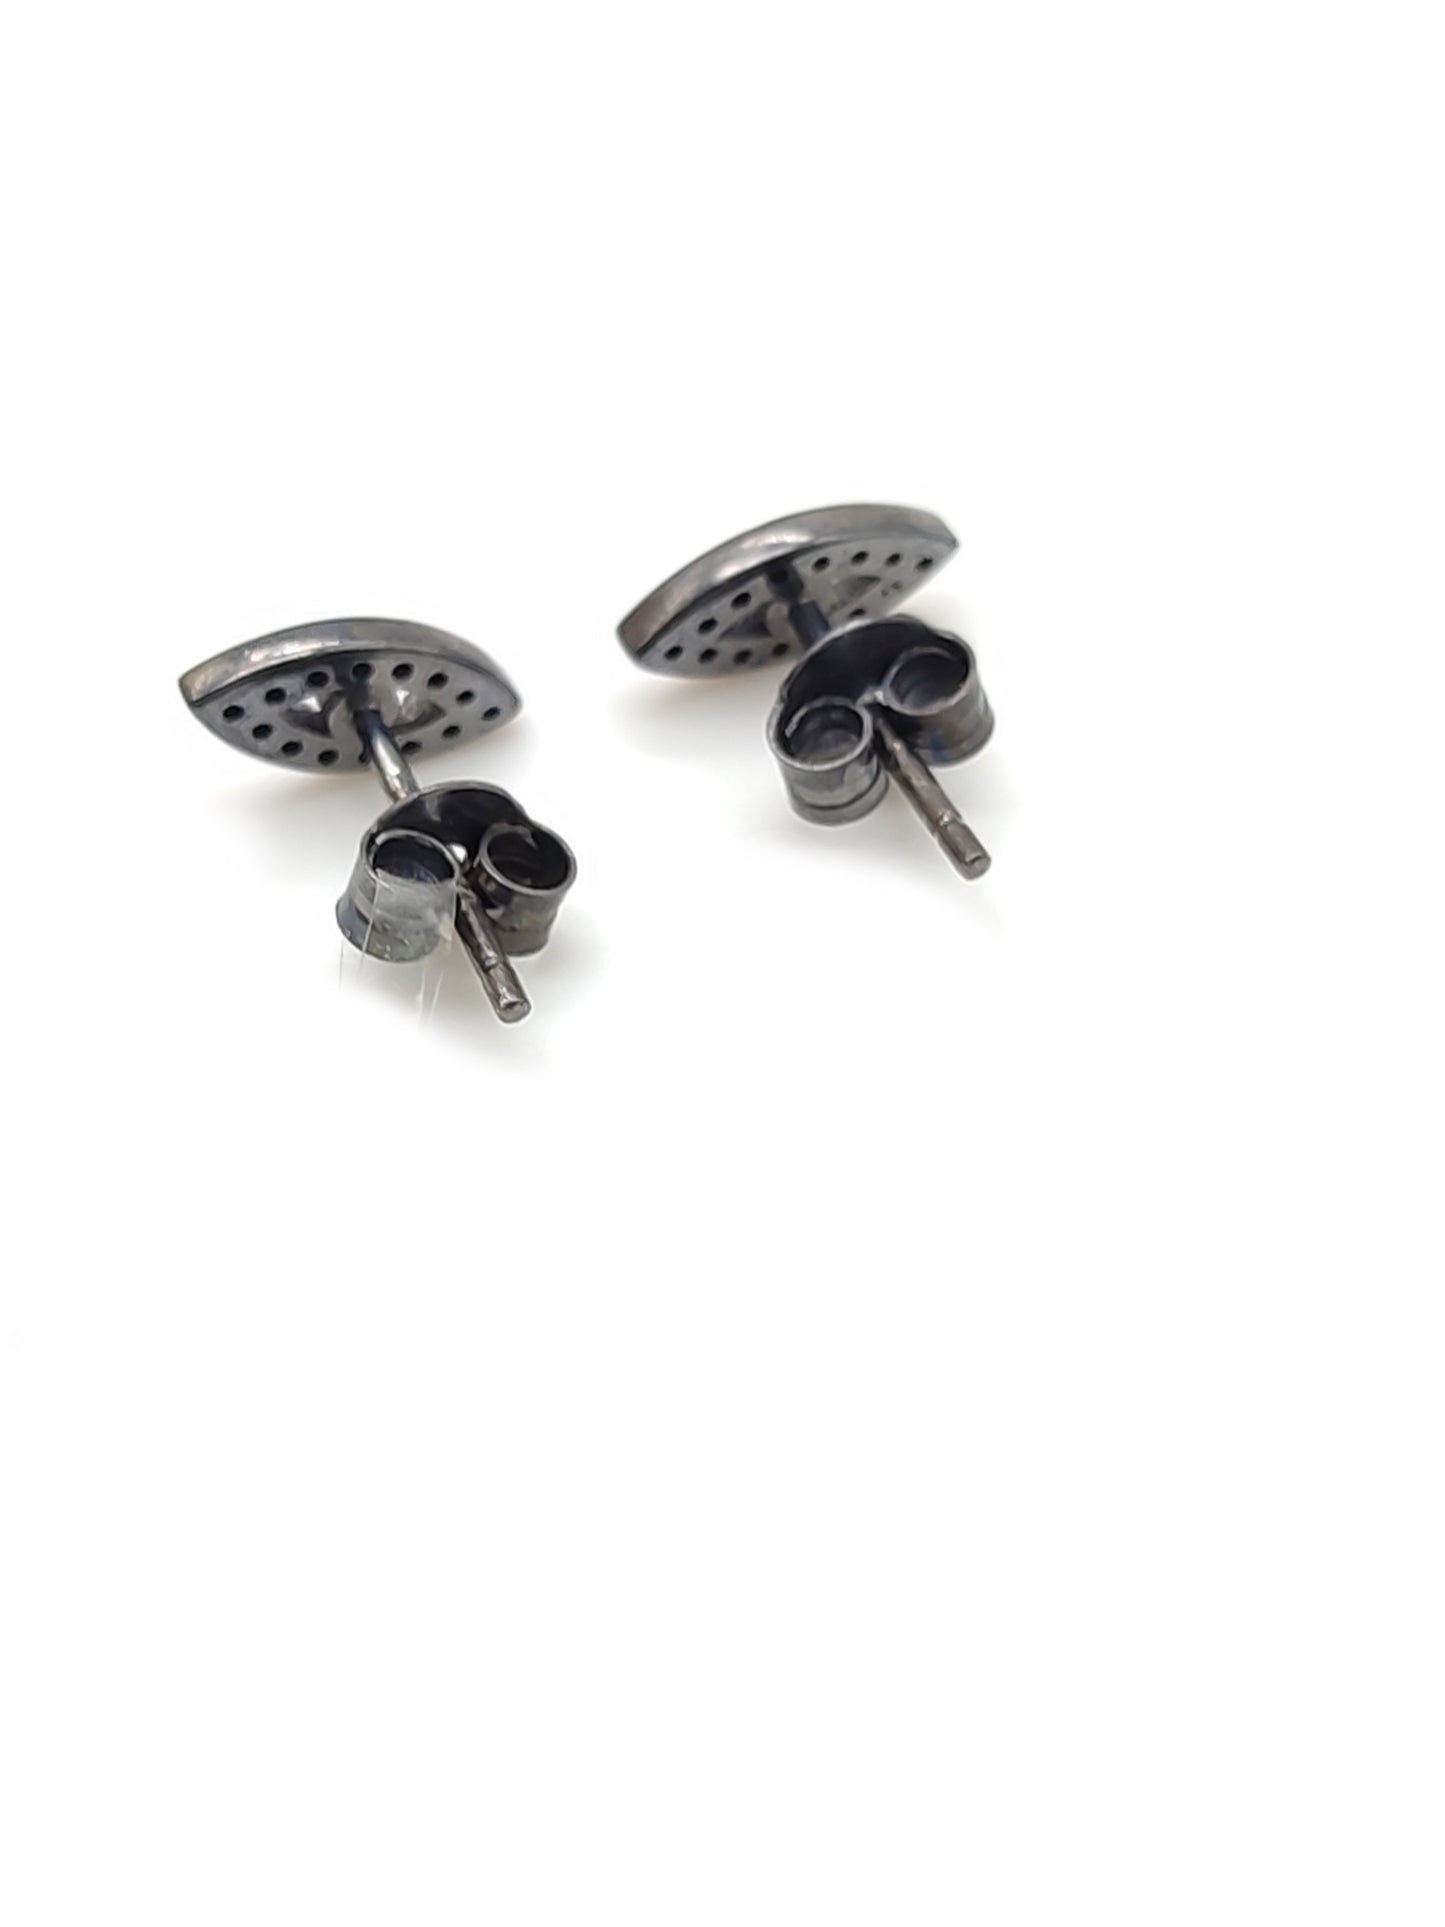 Silver lobe earrings with Turkish eye pavé zircons